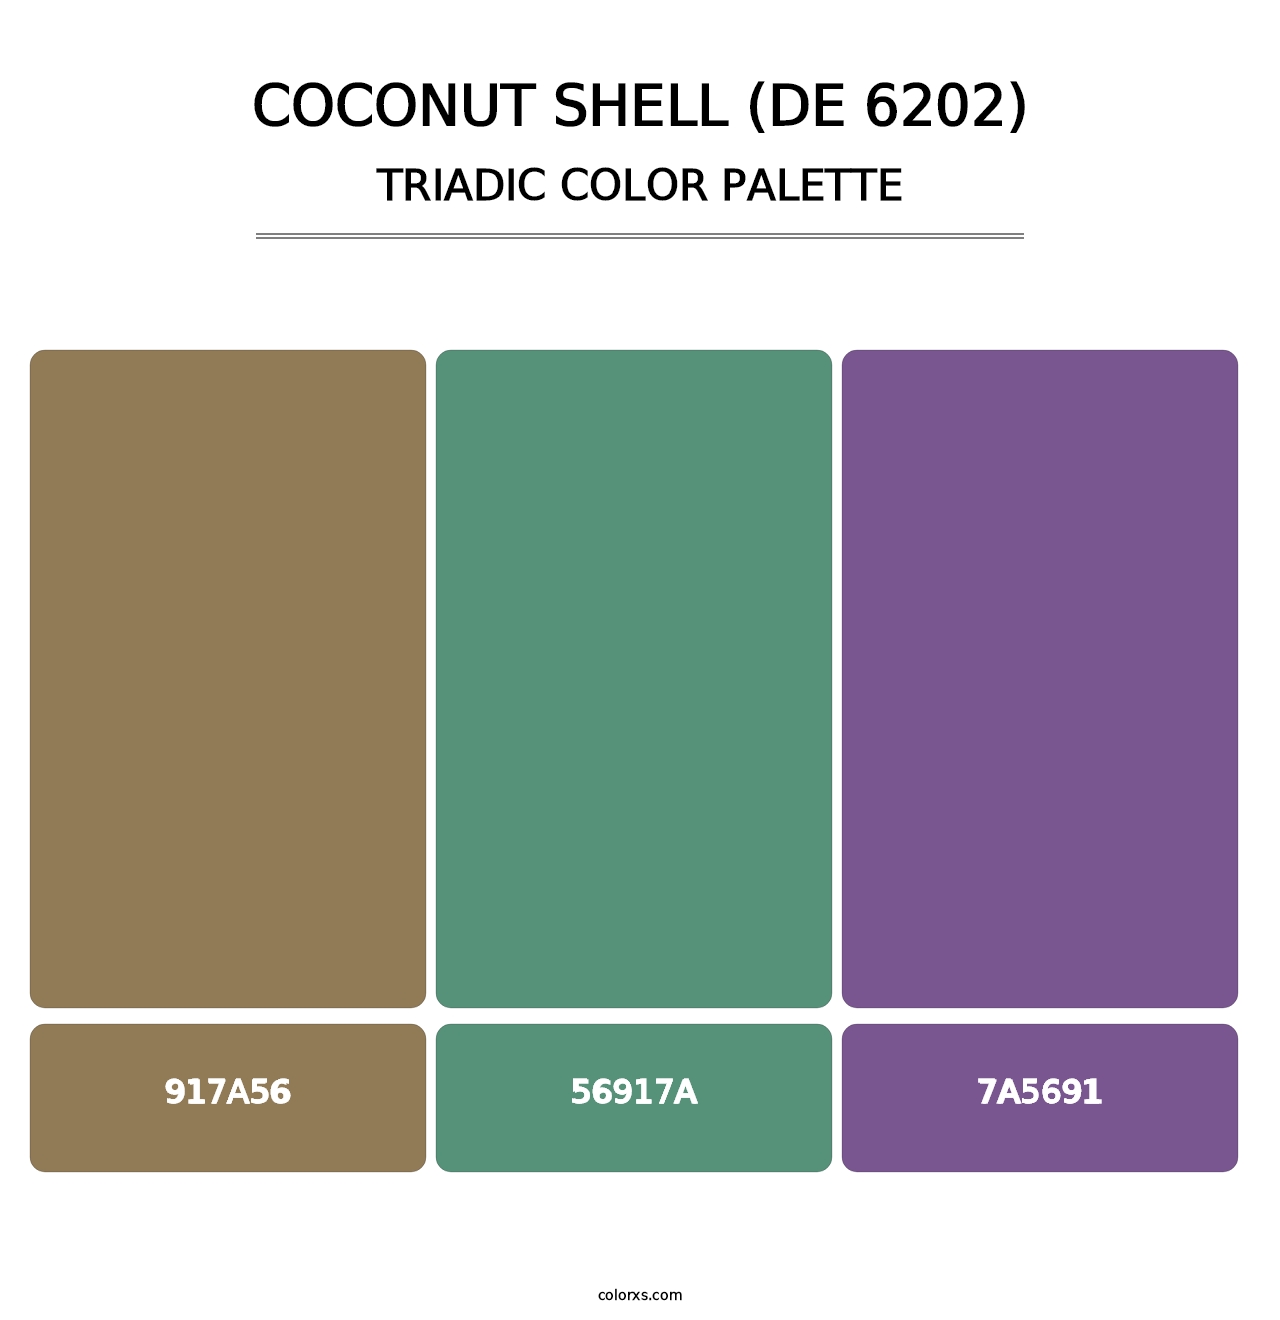 Coconut Shell (DE 6202) - Triadic Color Palette